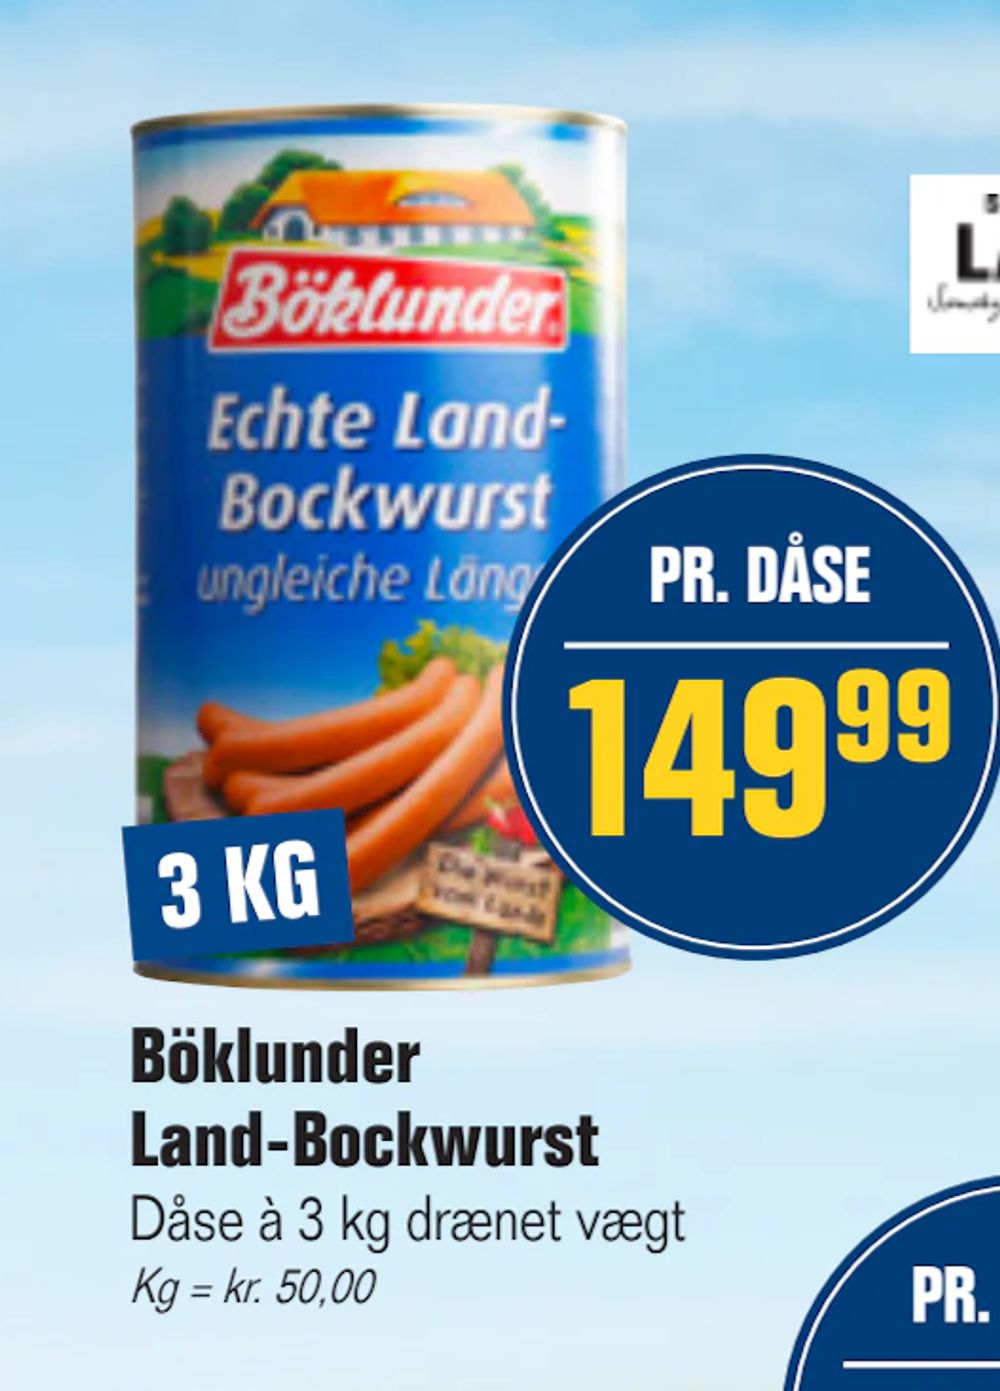 Tilbud på Böklunder Land-Bockwurst fra Otto Duborg til 149,99 kr.